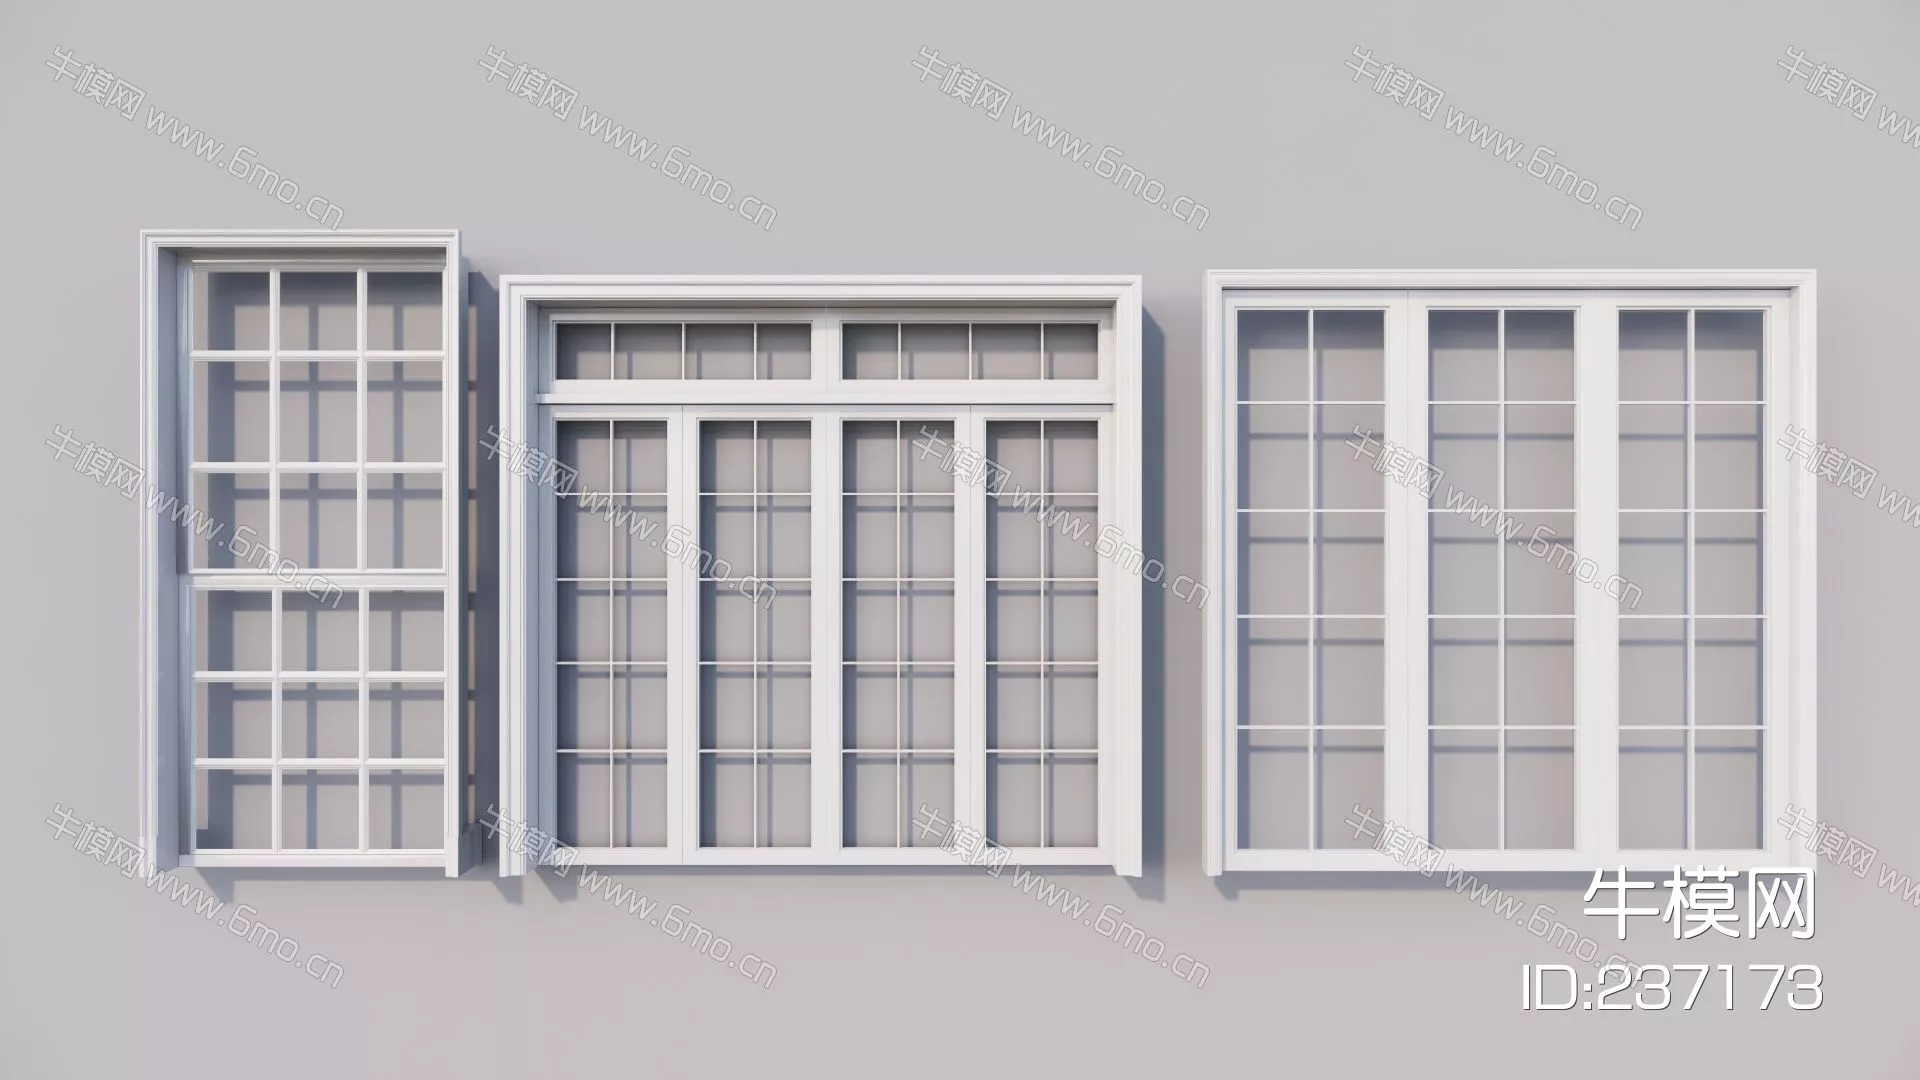 NORDIC DOOR AND WINDOWS - SKETCHUP 3D MODEL - ENSCAPE - 237173